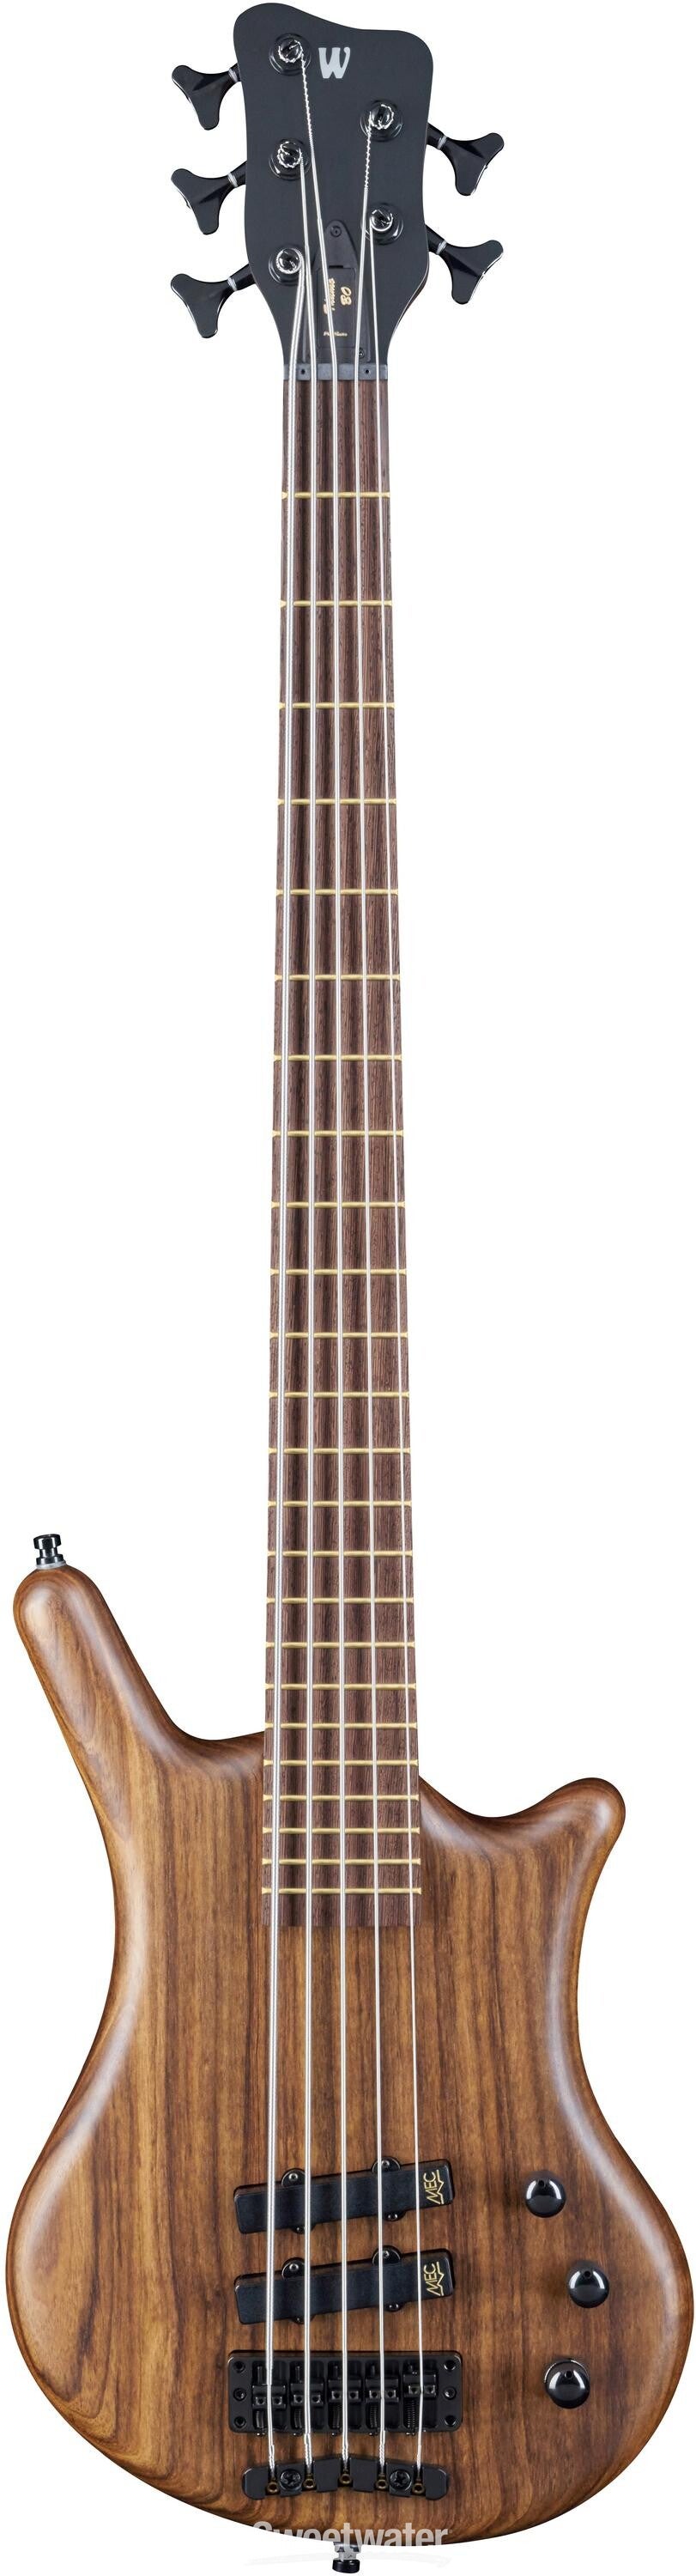 Warwick Pro Series Thumb BO 5-string Bass - Natural Satin with 